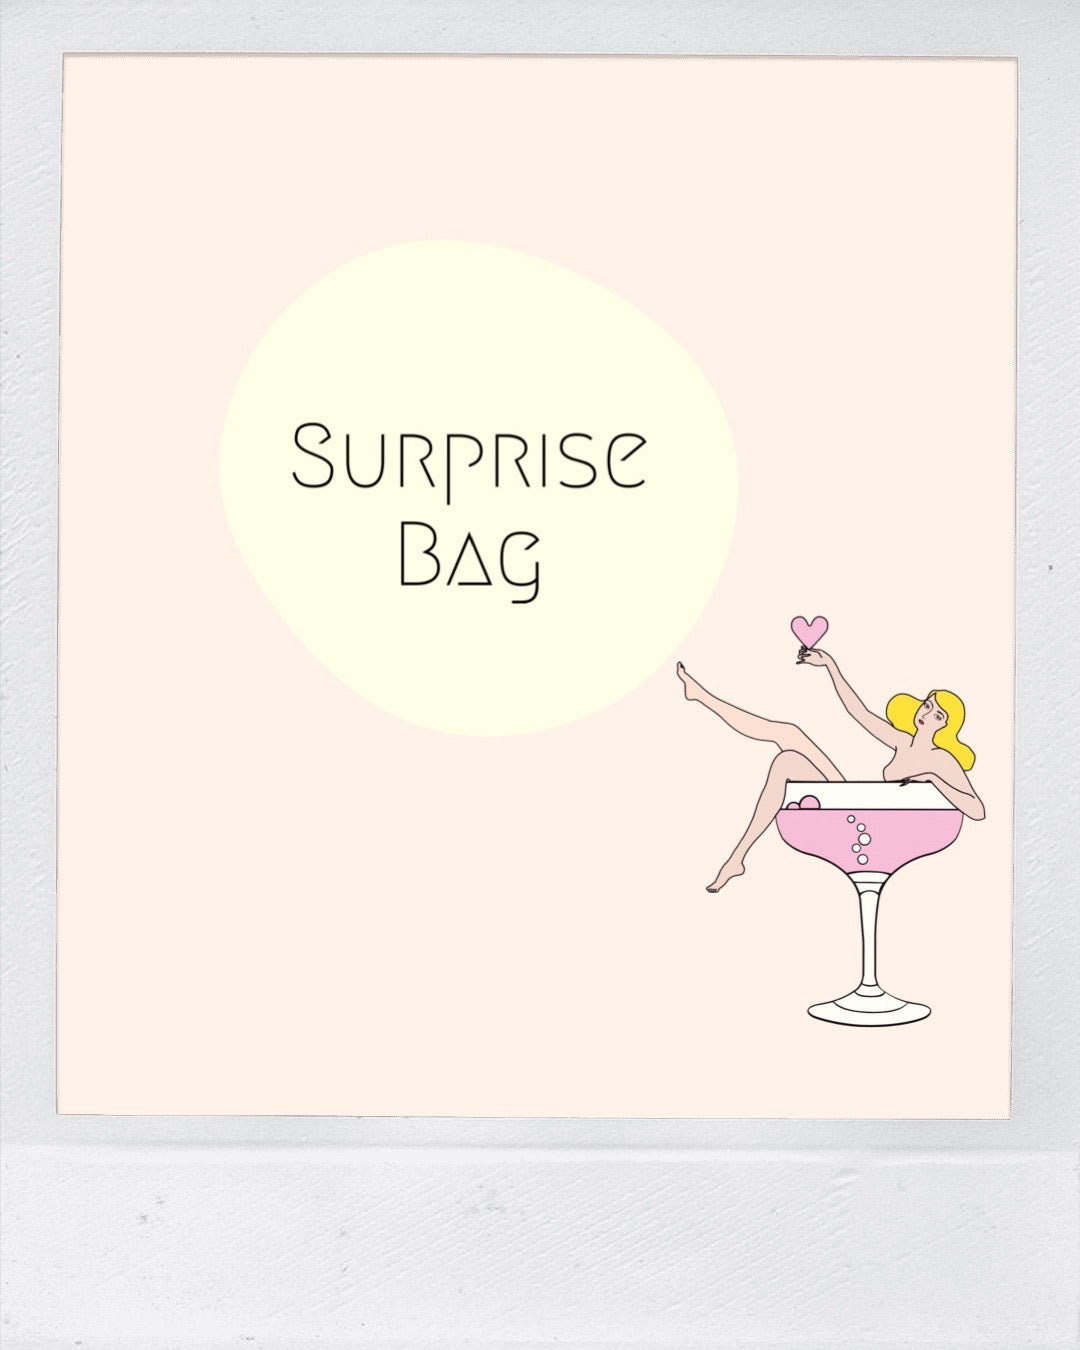 The Surprise bag